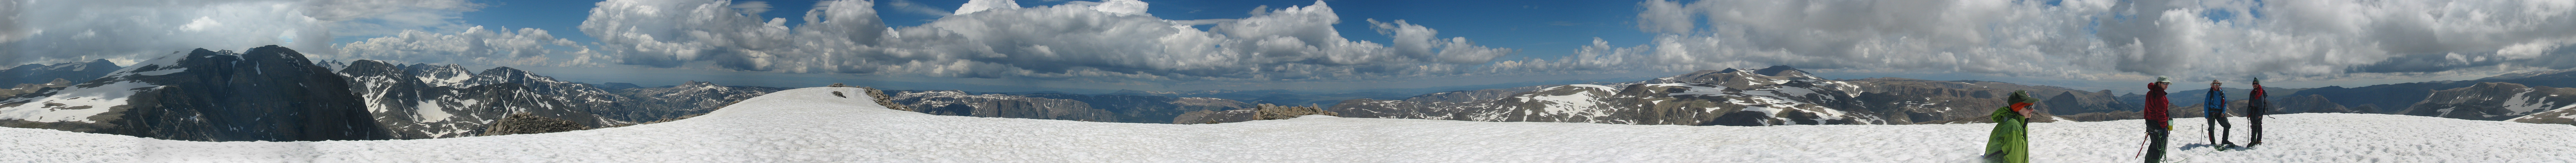 View from Klondike Peak